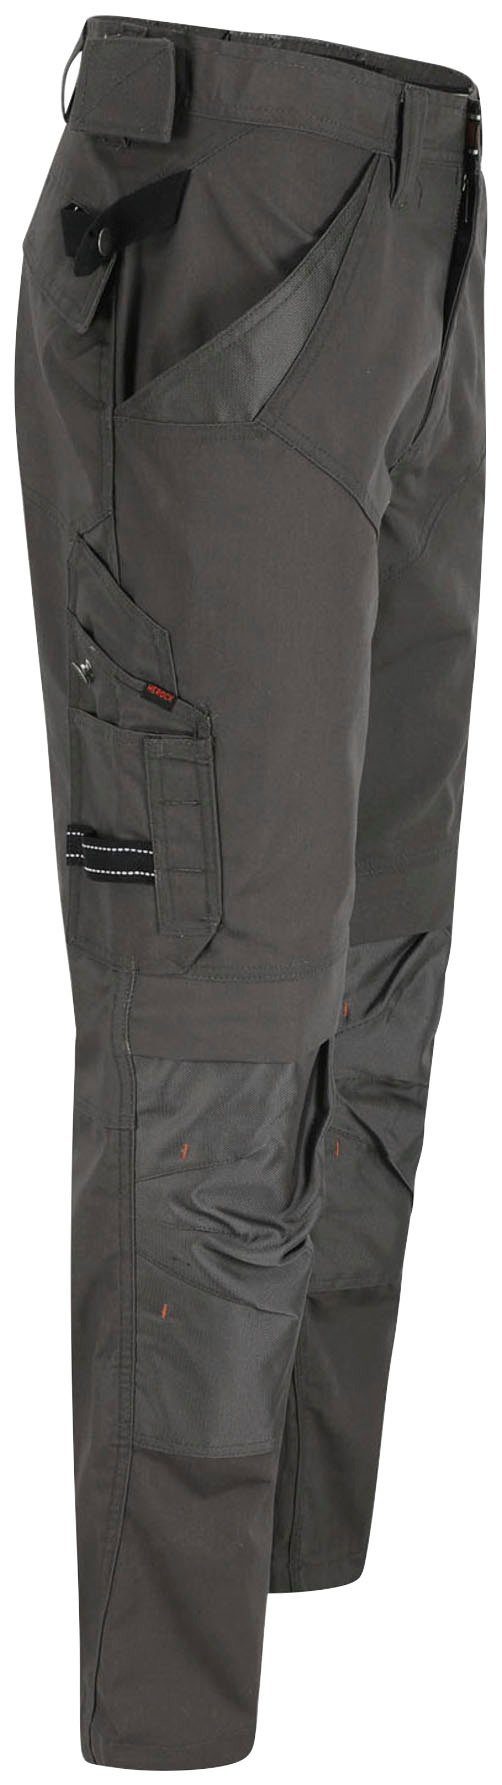 Herock Arbeitshose Regelbarer leicht & - bequem grau Taschen 8 Apollo Hose - Wasserabweisend Bund 